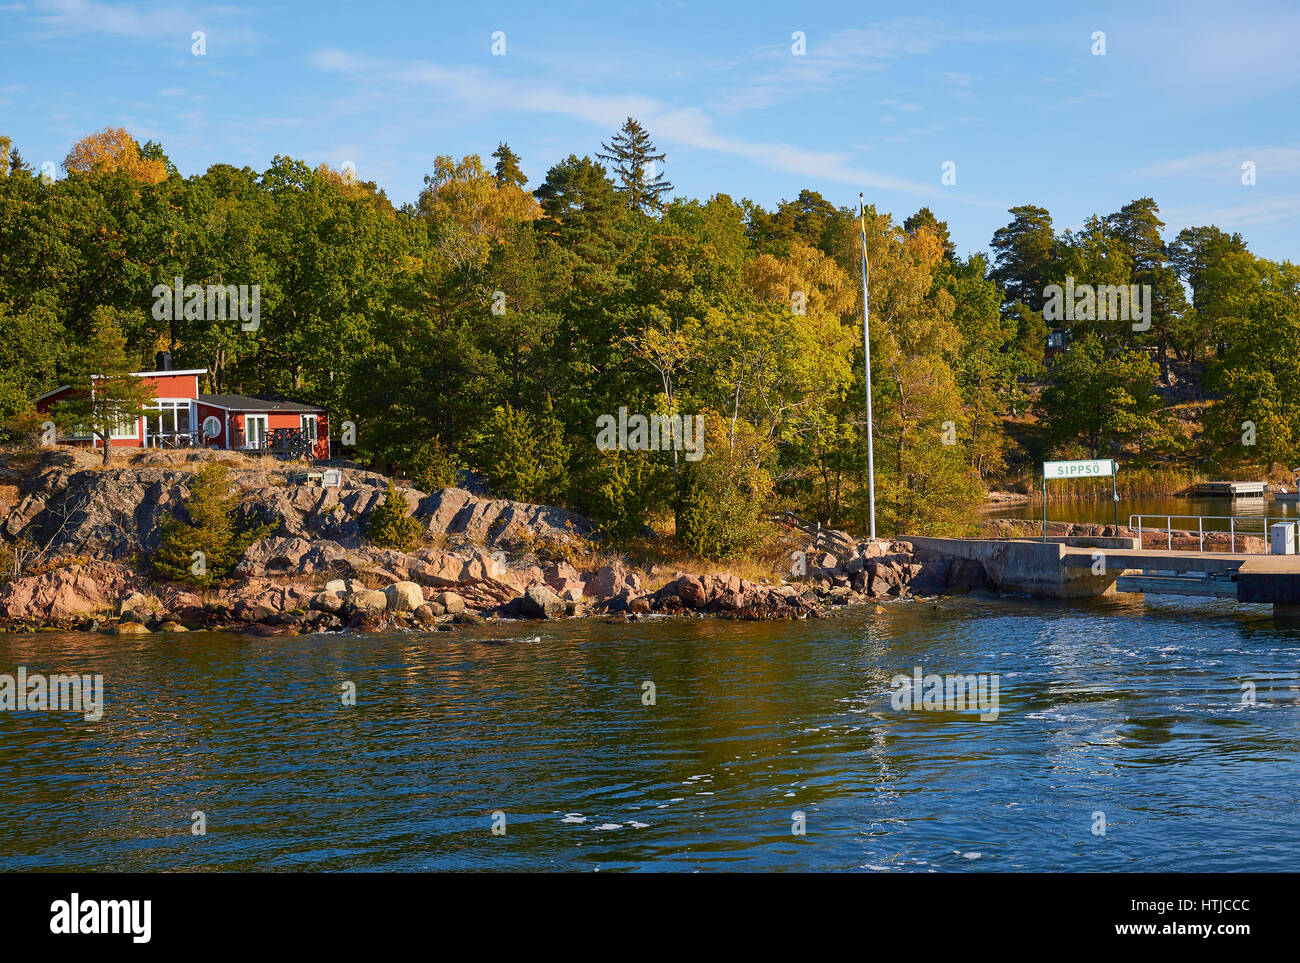 Sippso, île de l'archipel de Stockholm, Suède, Scandinavie Banque D'Images